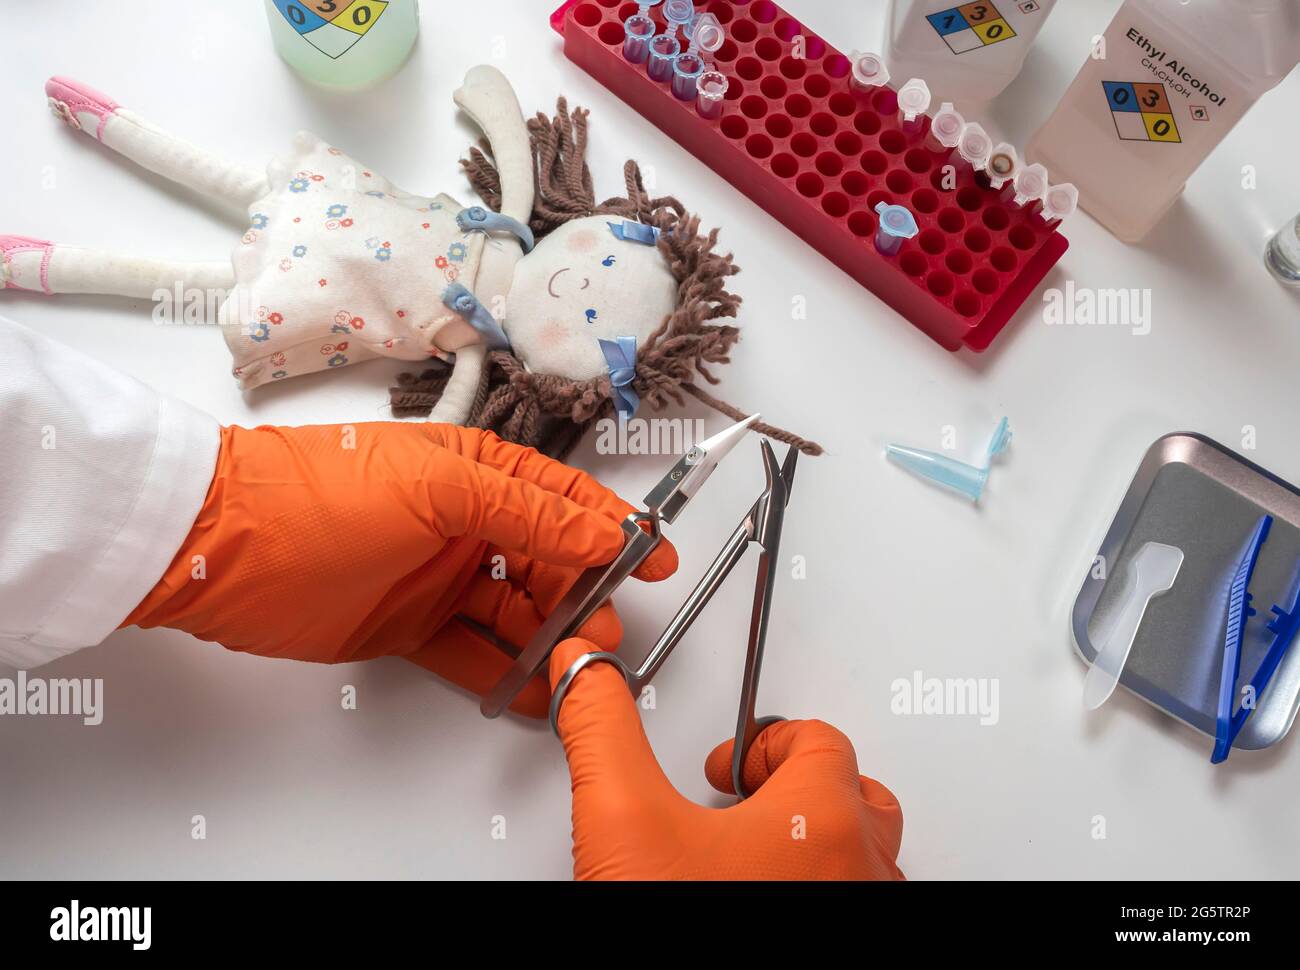 La police judiciaire extrait les cheveux de la poupée de chiffon impliquée dans le meurtre au laboratoire de crime pour l'analyse de l'ADN, image de concept Banque D'Images